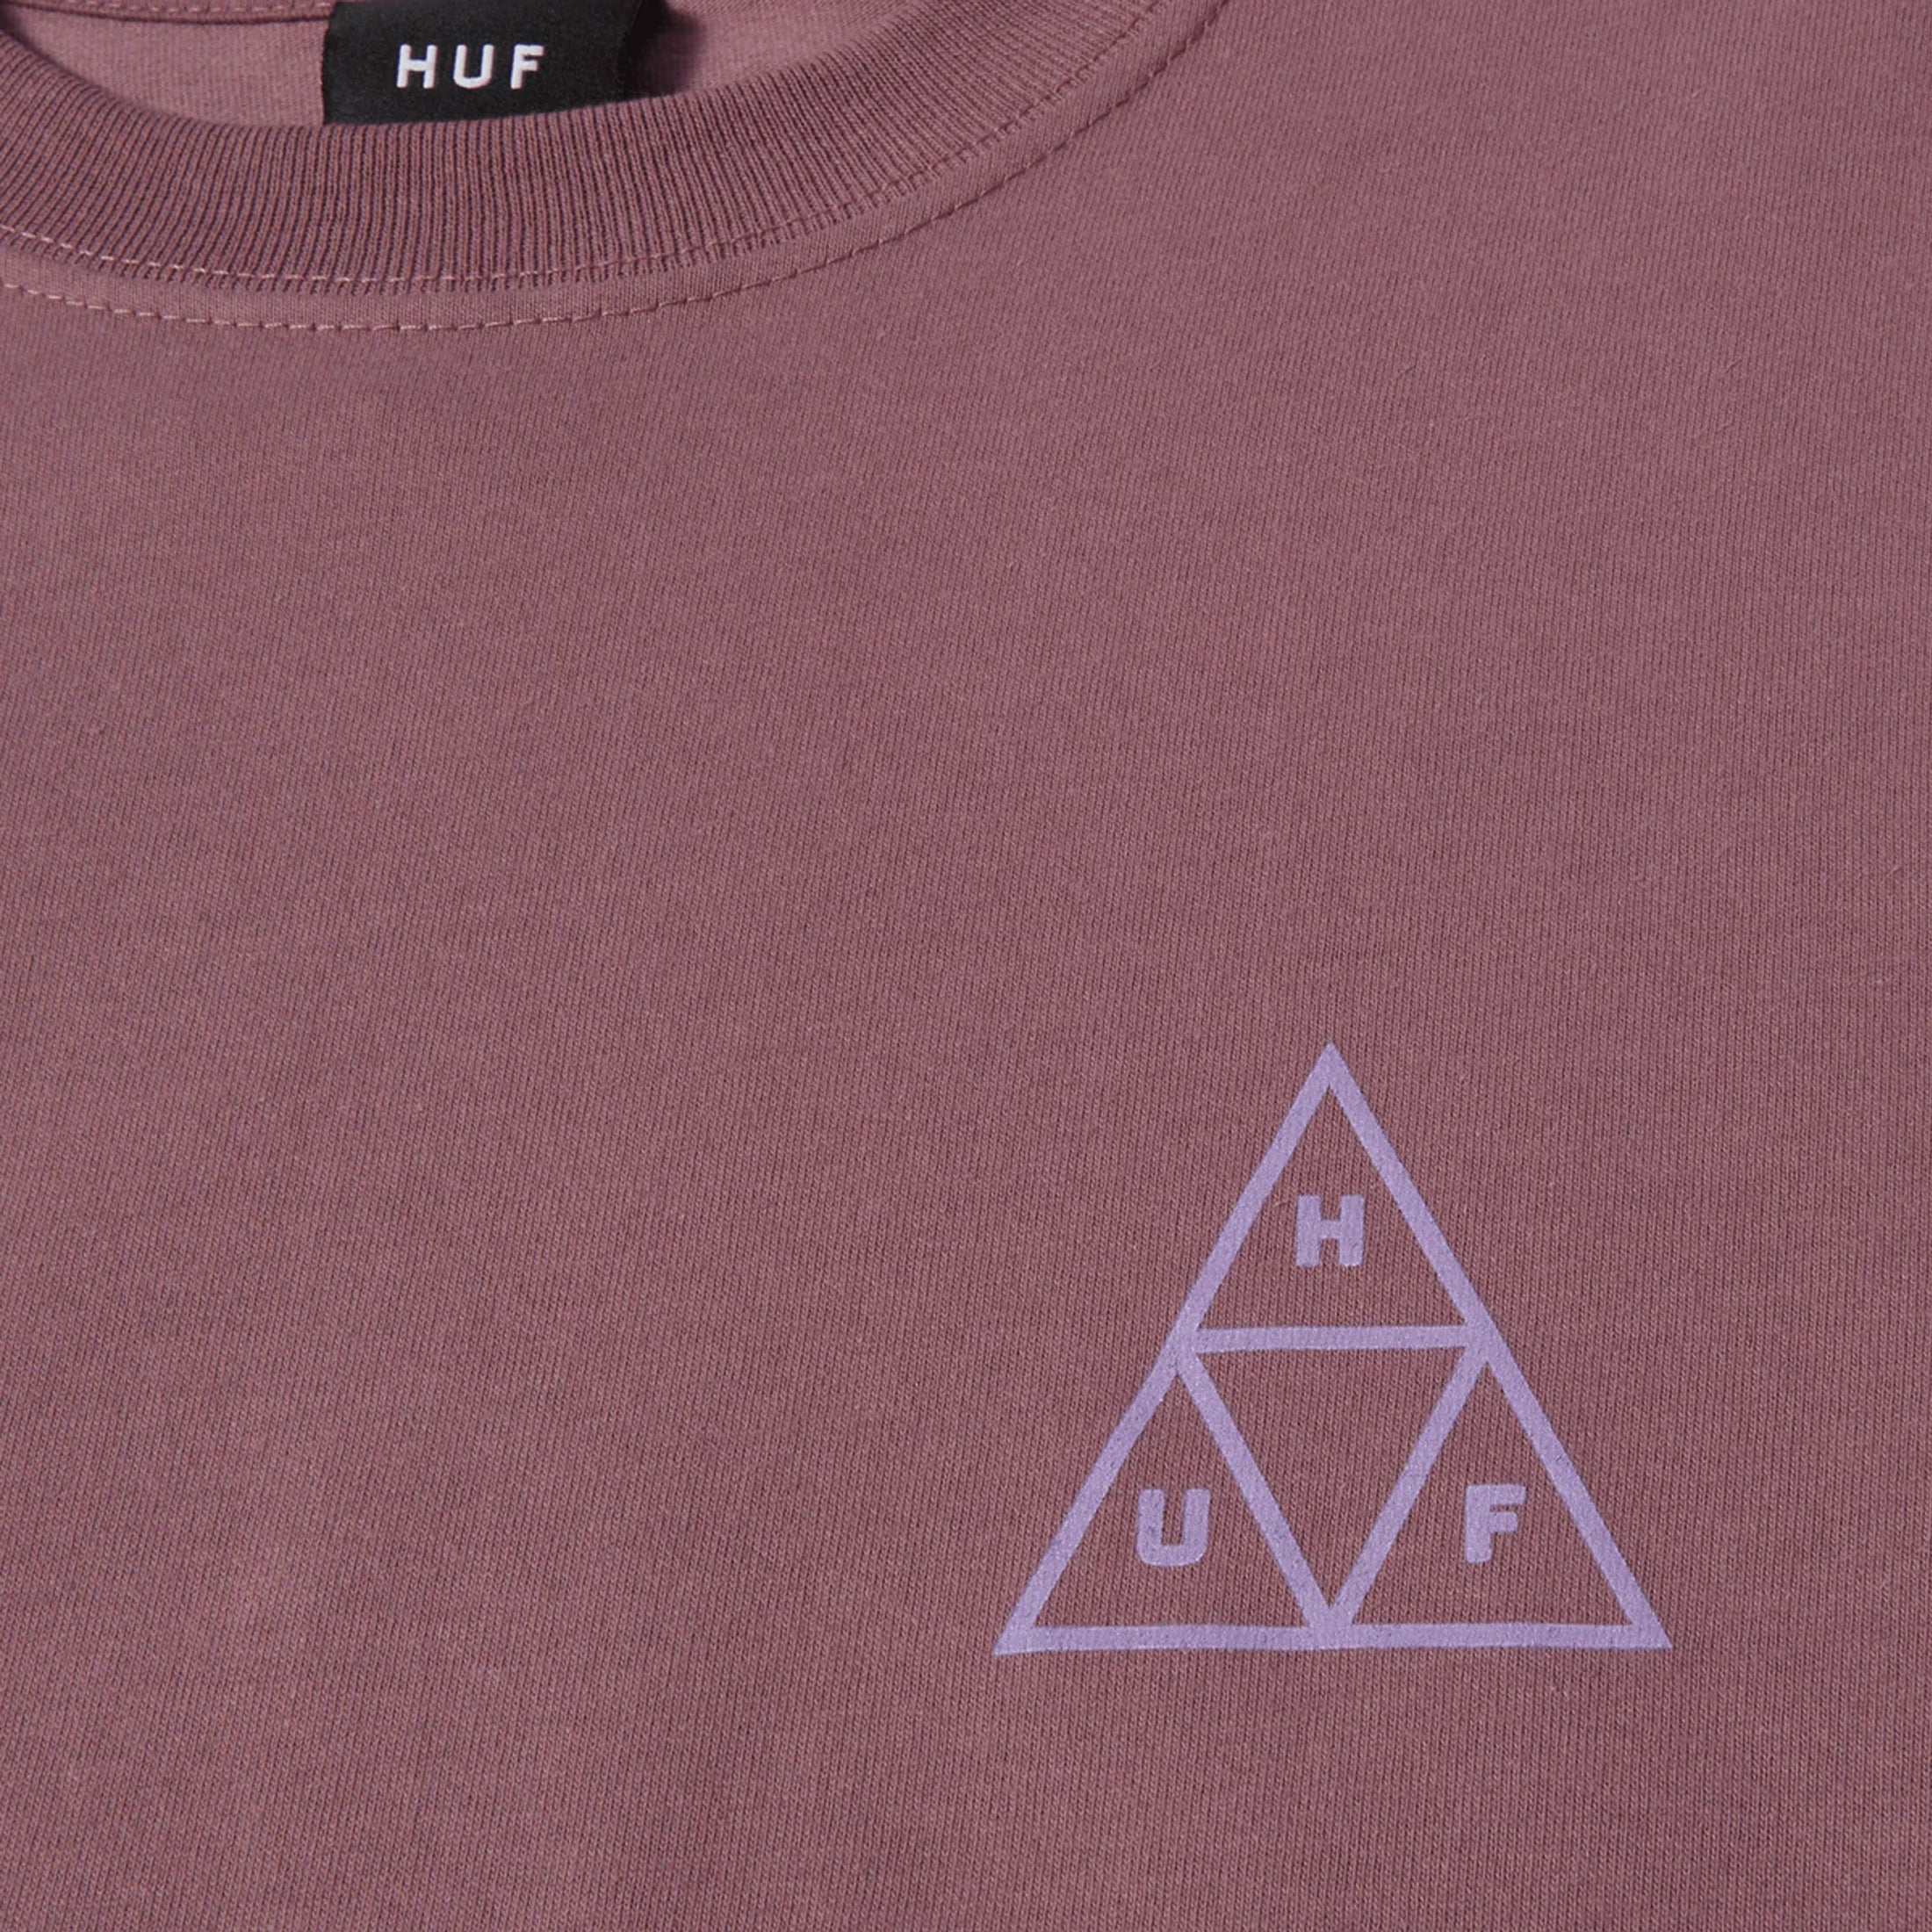 Huf Set Triple Triangle Long Sleeve T-Shirt Mauve